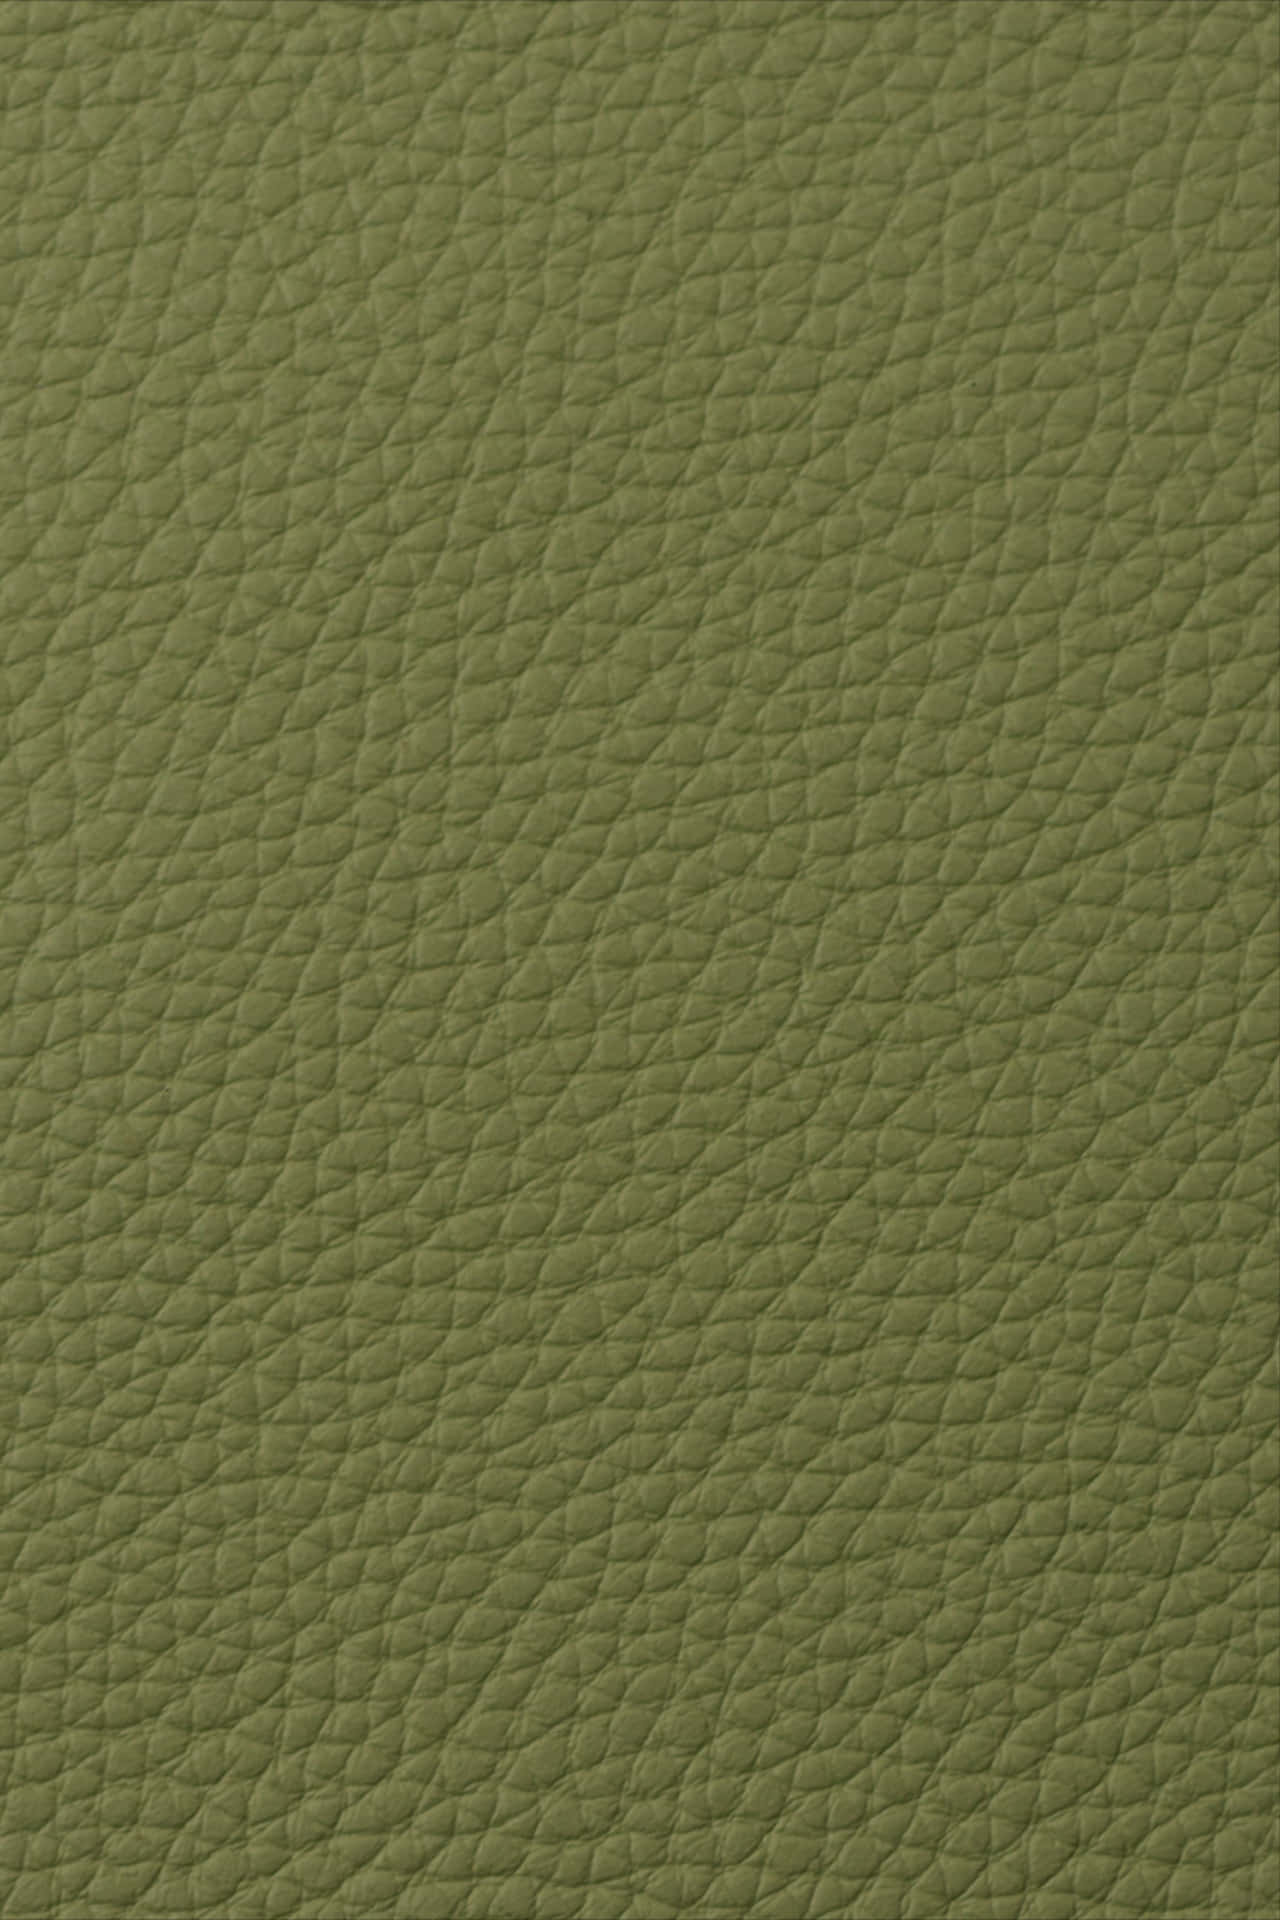 Imagende Textura En Color Verde De Cuero.